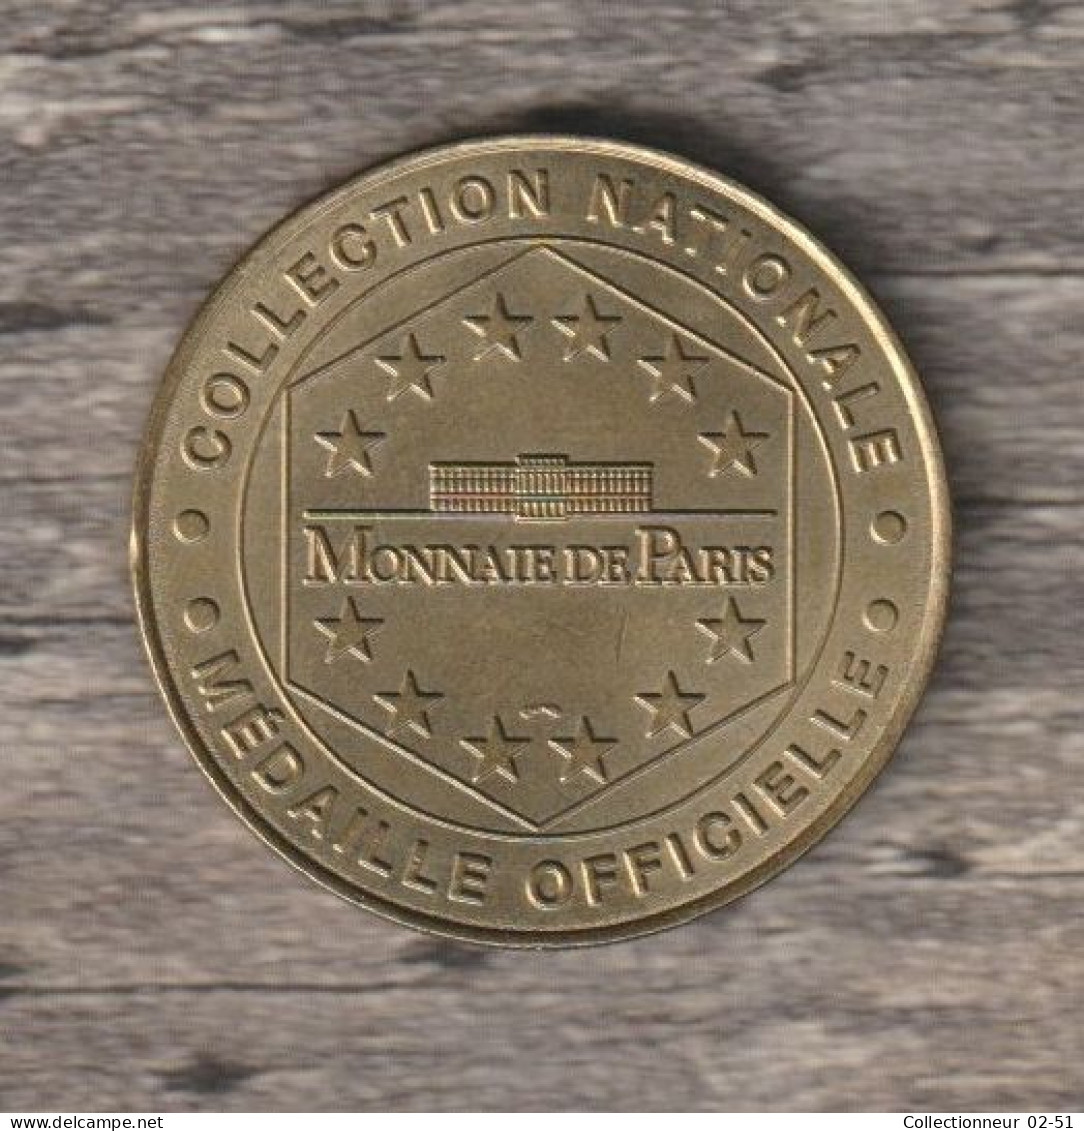 Monnaie De Paris : Futuroscope Le Parc Européen De L'image - 1999 - Non-datés